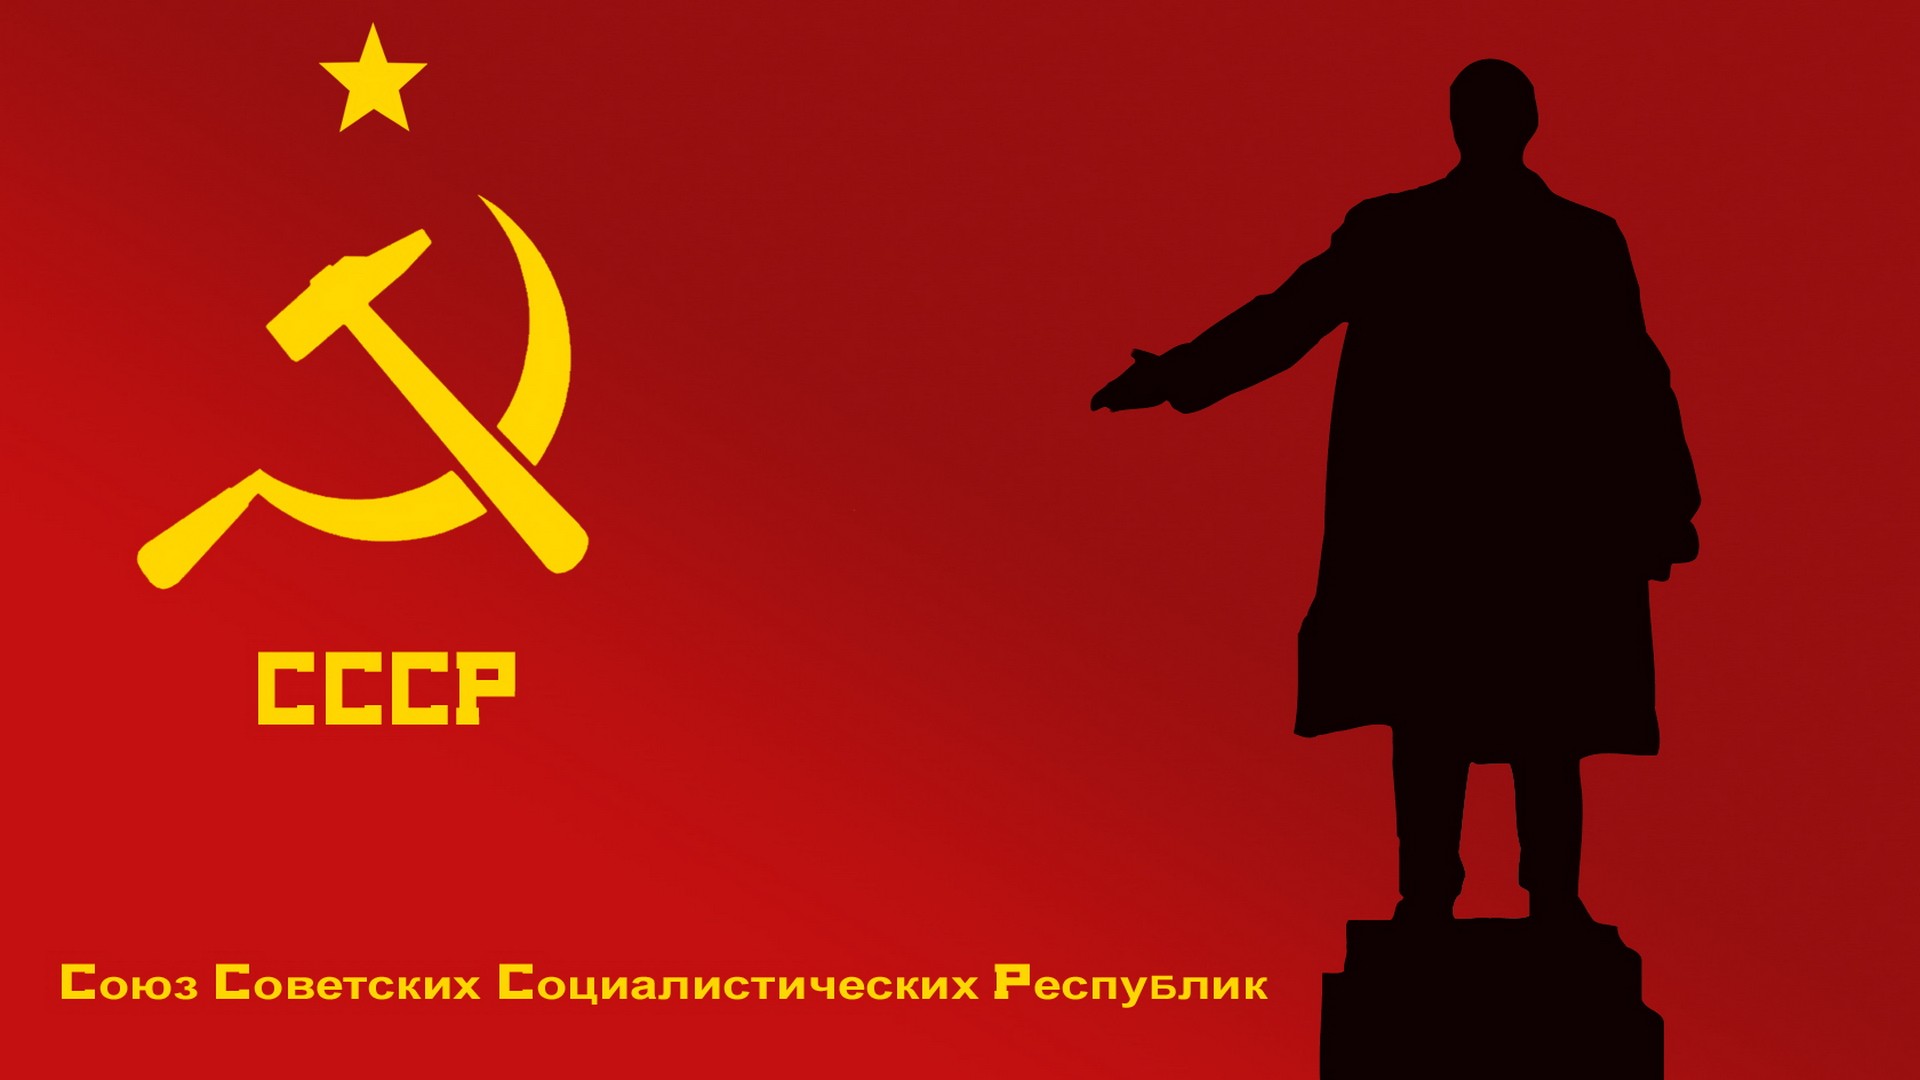 Russia Russian Wallpaper Lenin Ussr